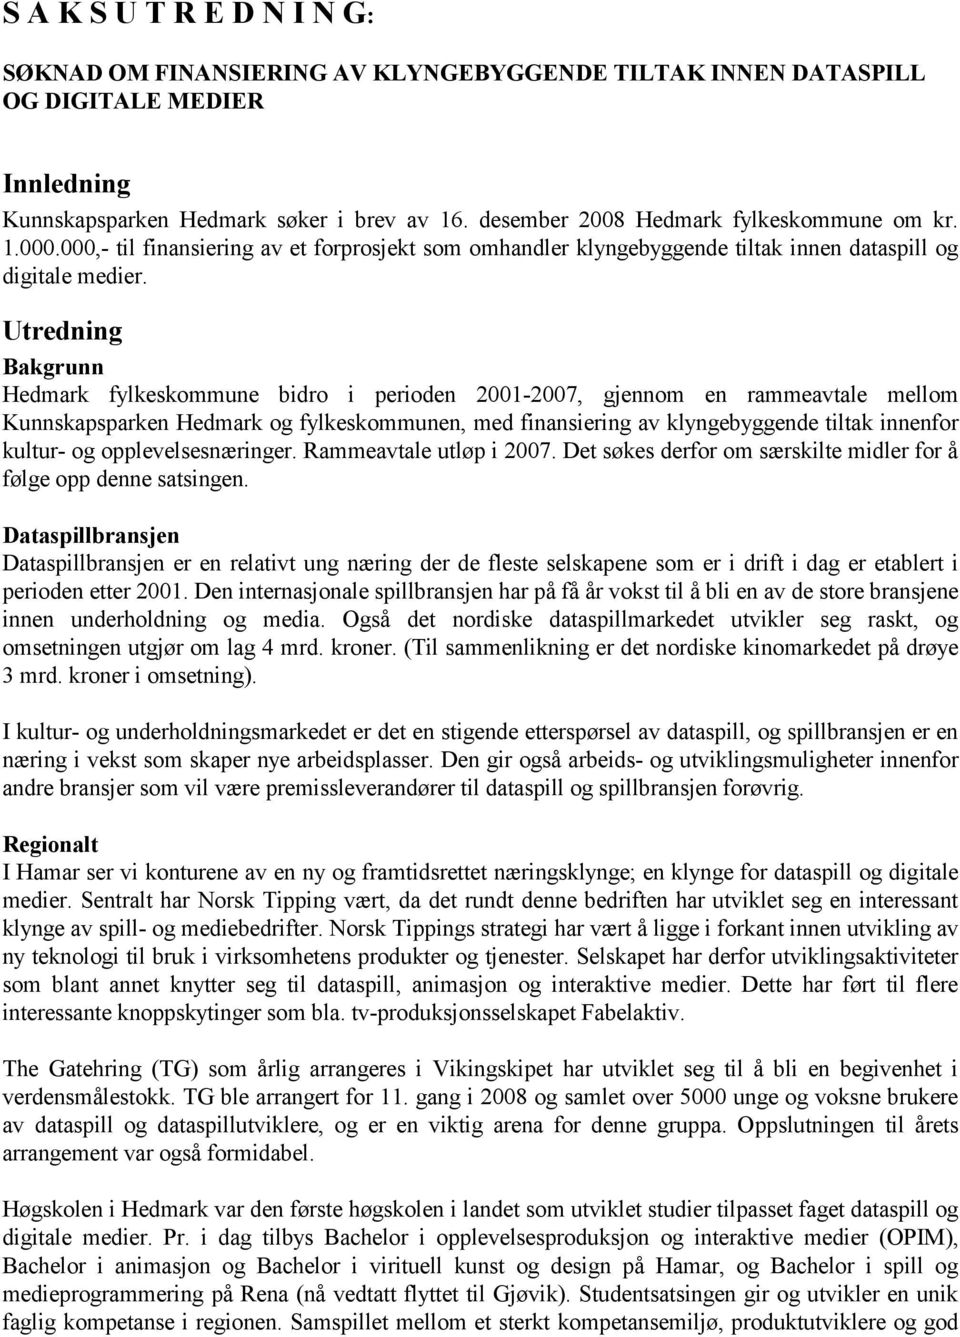 Utredning Bakgrunn Hedmark fylkeskommune bidro i perioden 2001-2007, gjennom en rammeavtale mellom Kunnskapsparken Hedmark og fylkeskommunen, med finansiering av klyngebyggende tiltak innenfor